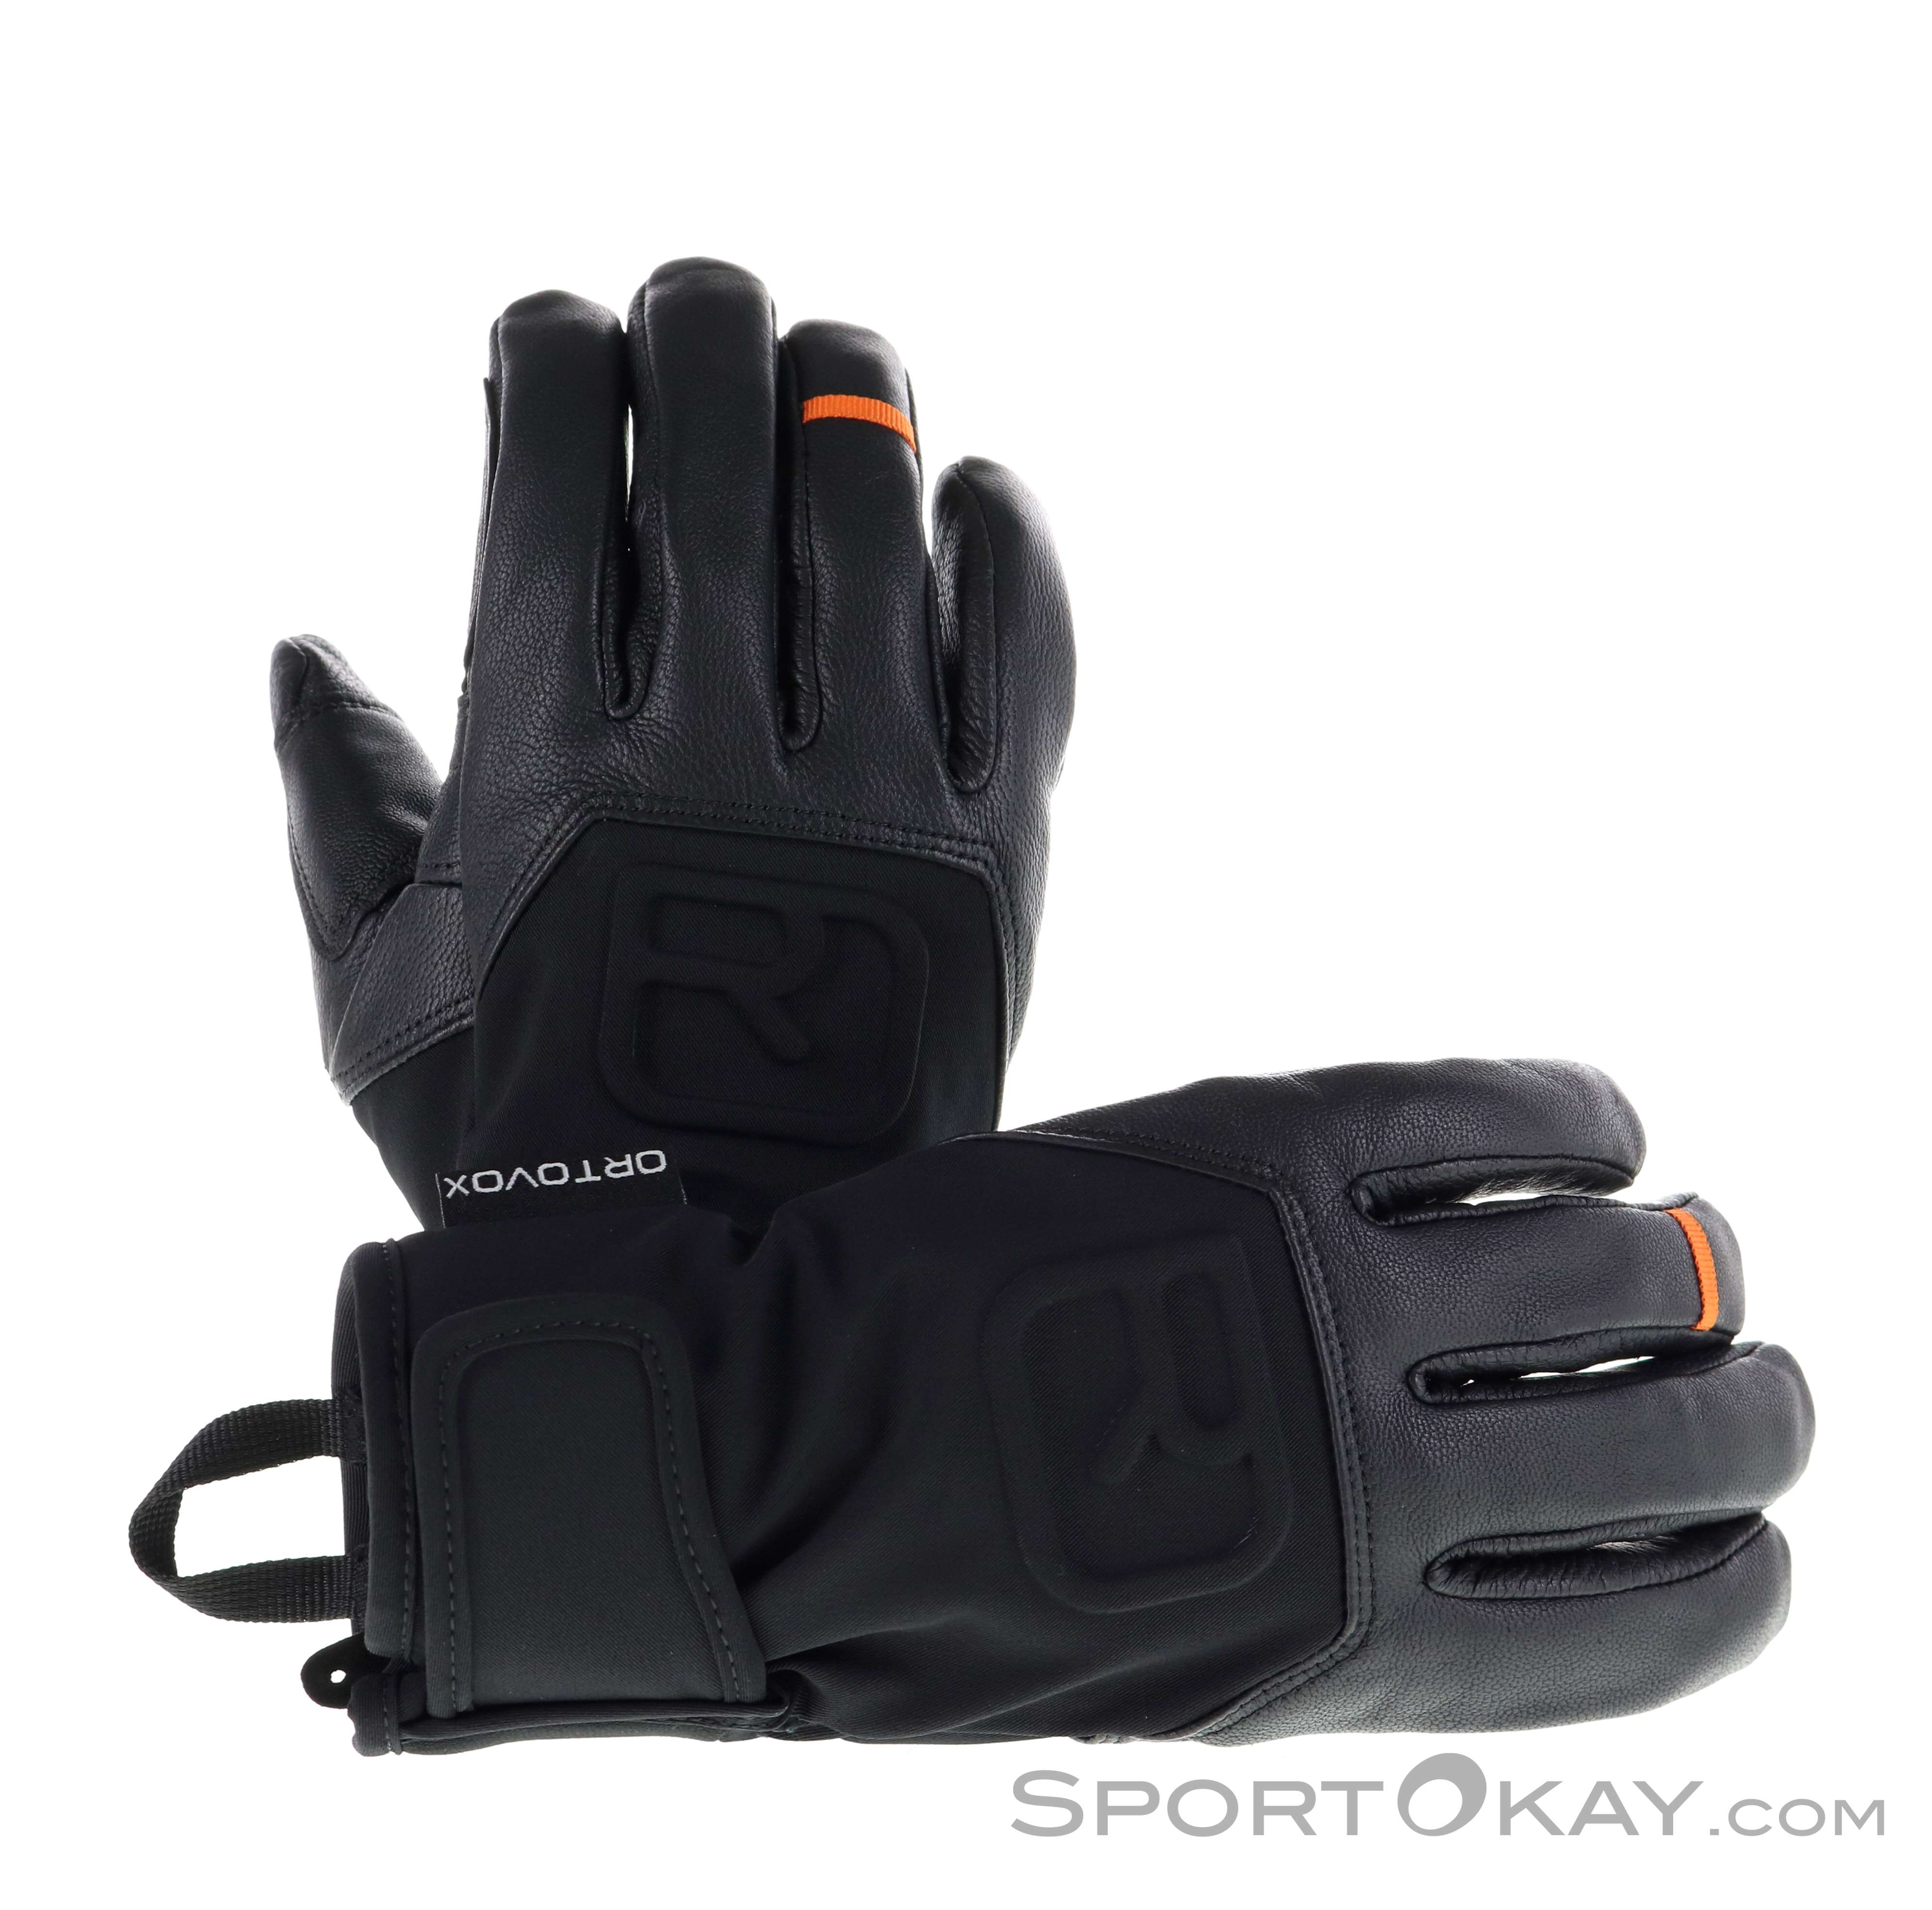 Ortovox Guanti modello High Alpine Glove marca 